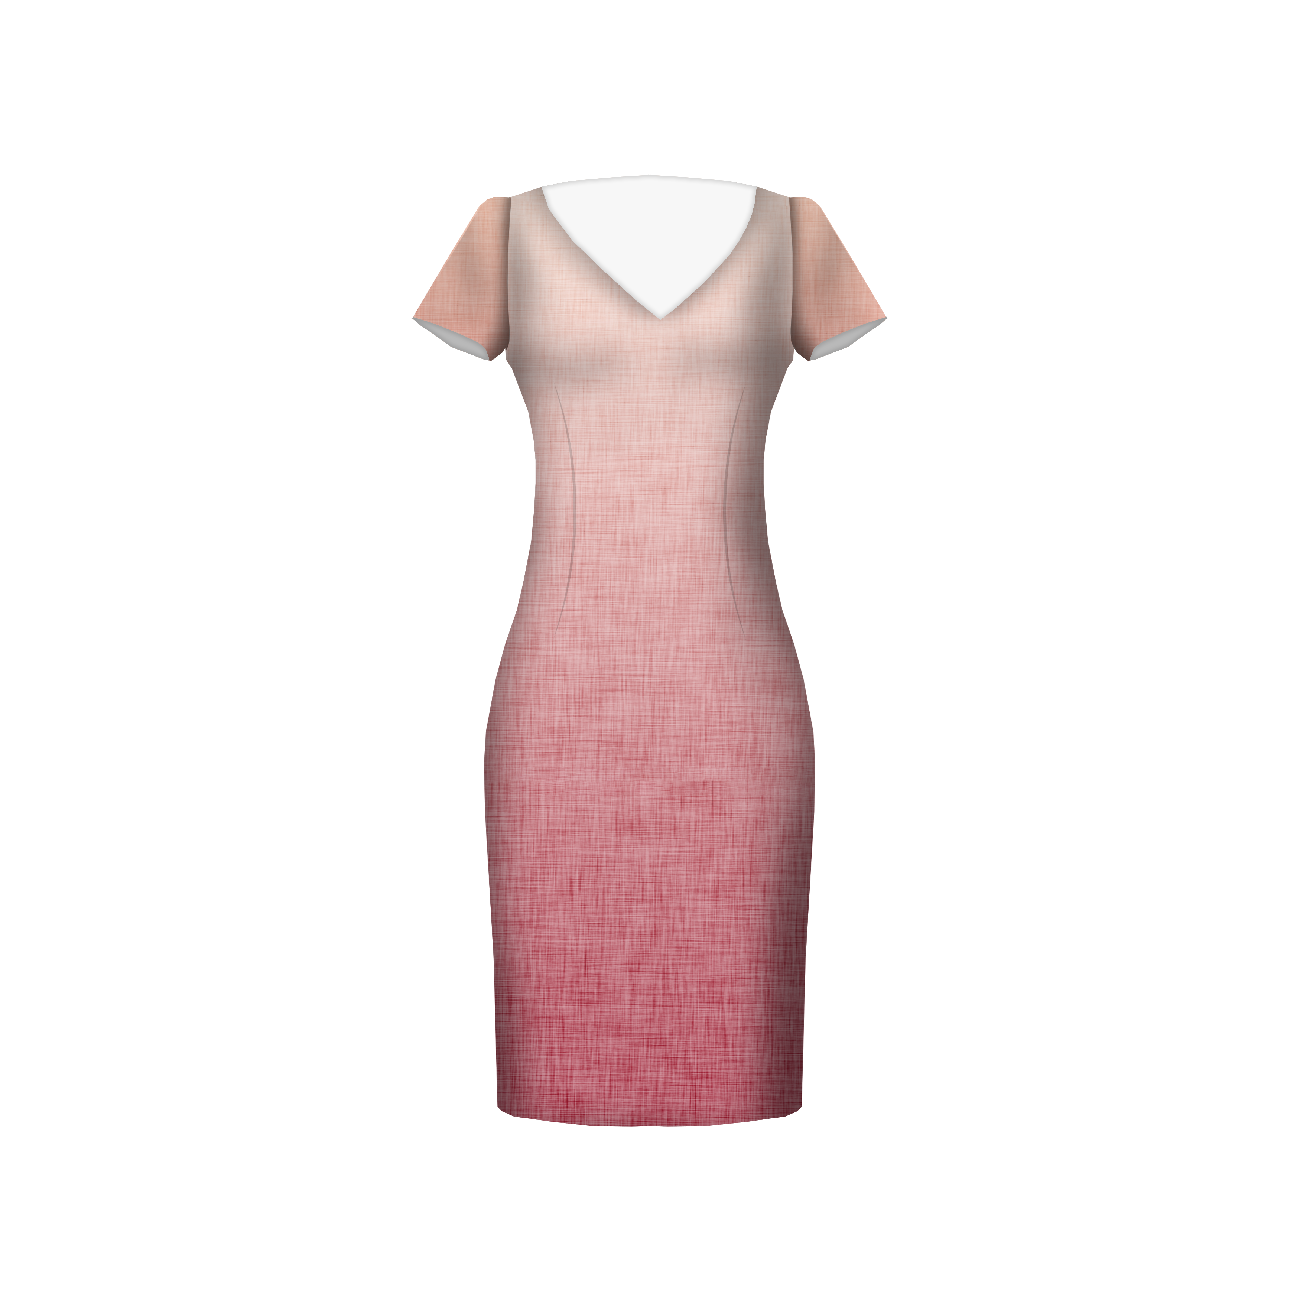 OMBRE / ACID WASH - fuksja (blady róż) - panel sukienkowy Satyna